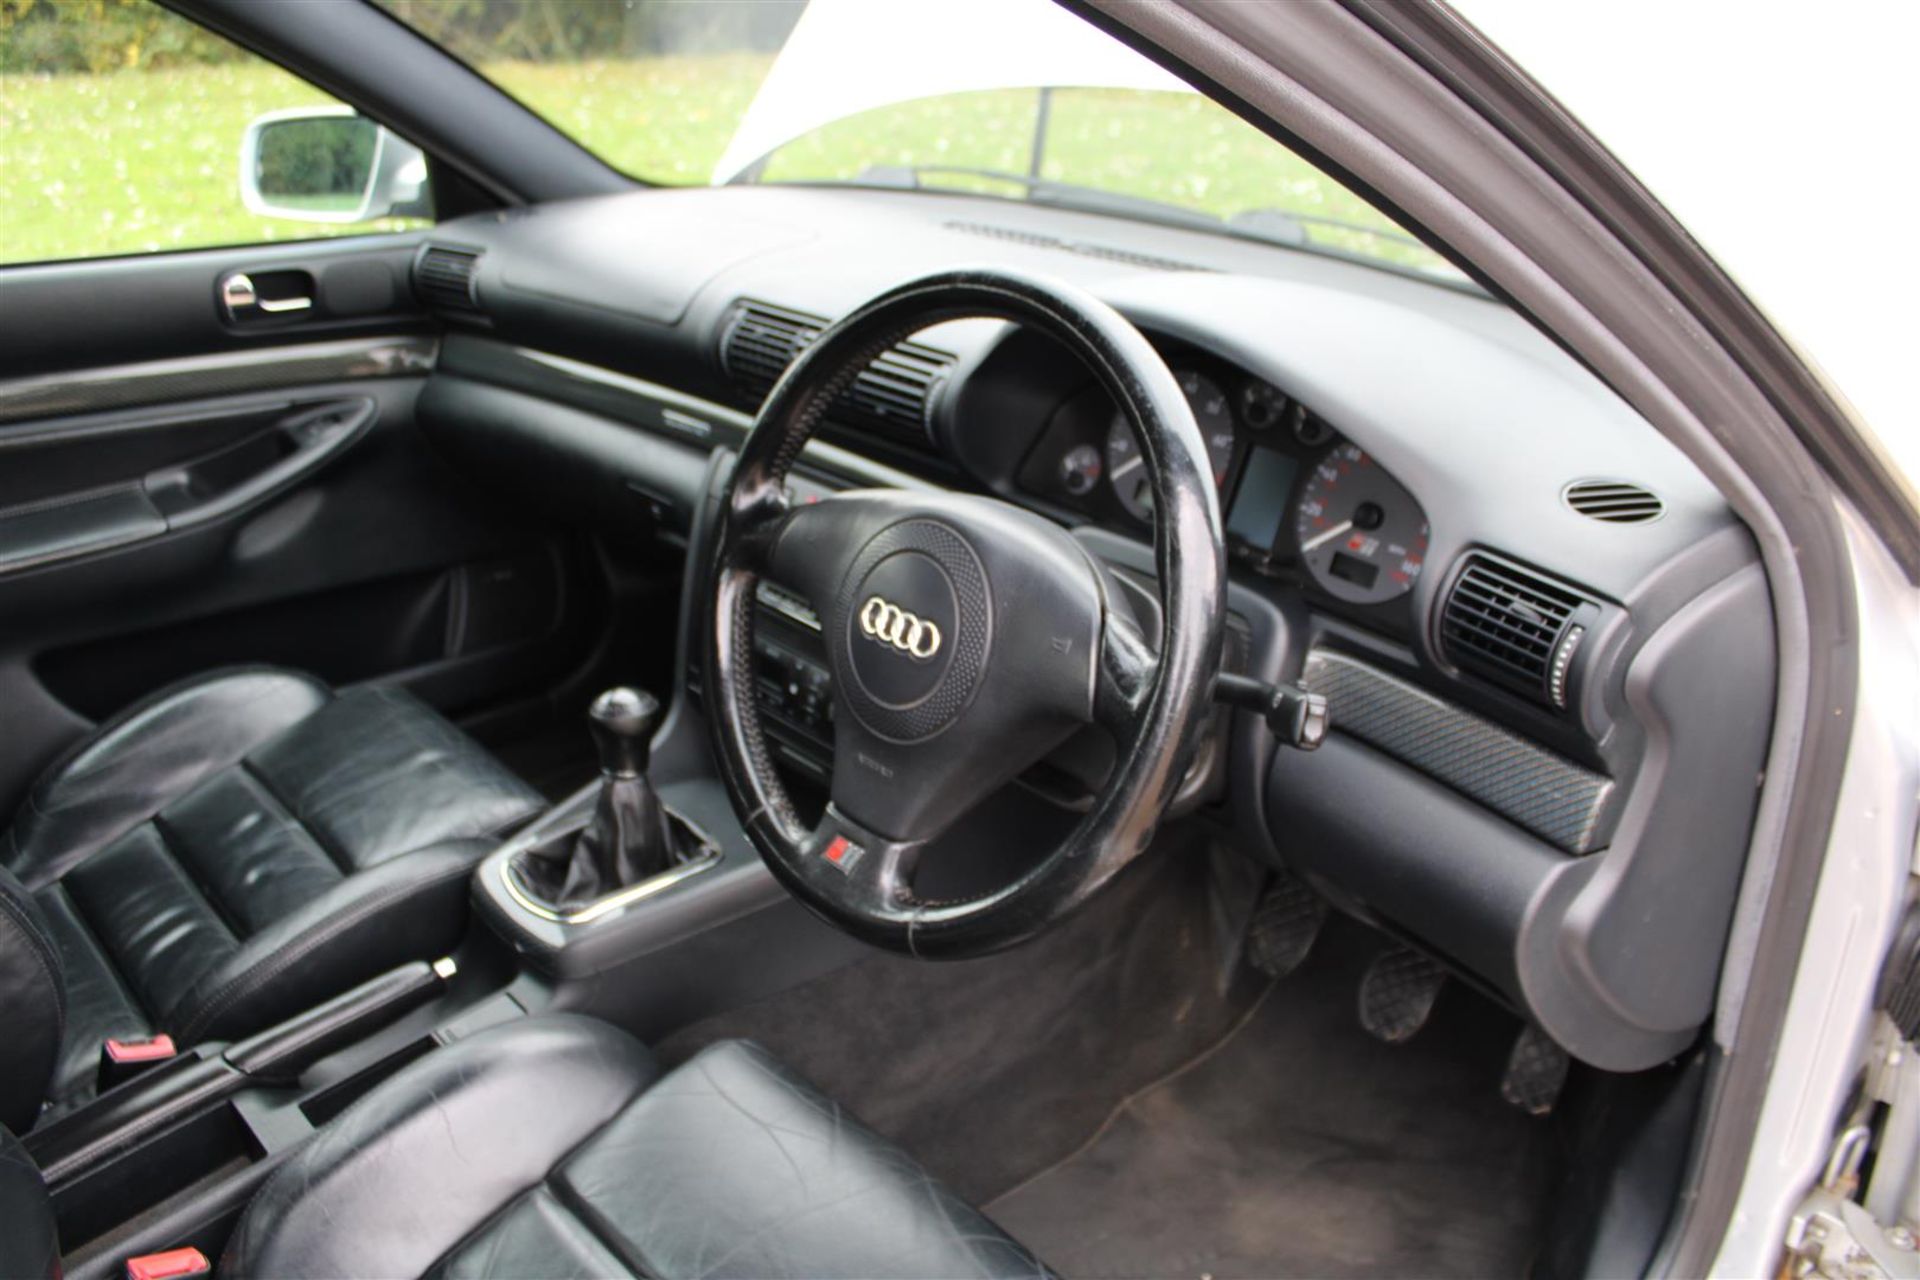 2000 Audi S4 Quattro Avant Estate - Image 10 of 22